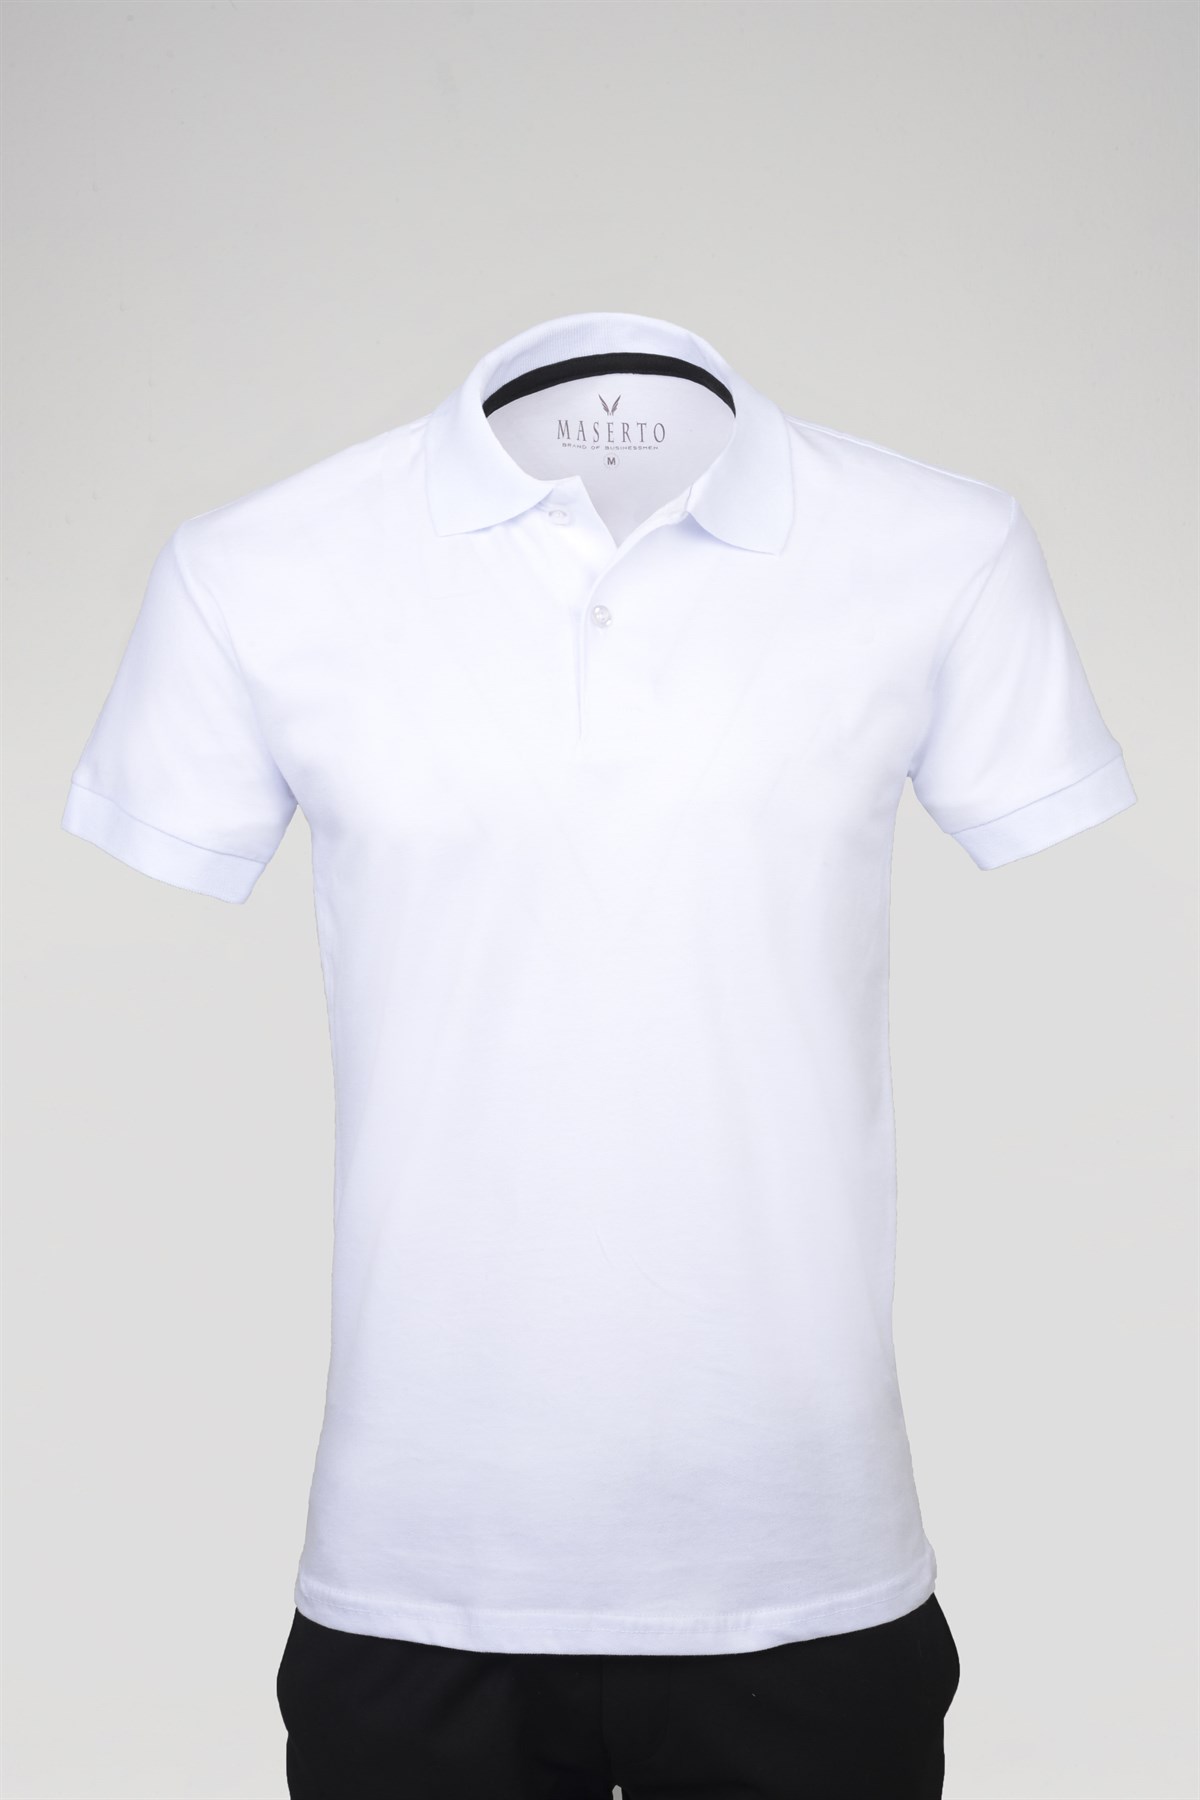 Maserto Slim Fit Polo Yaka Beyaz T-Shirt | maserto.com